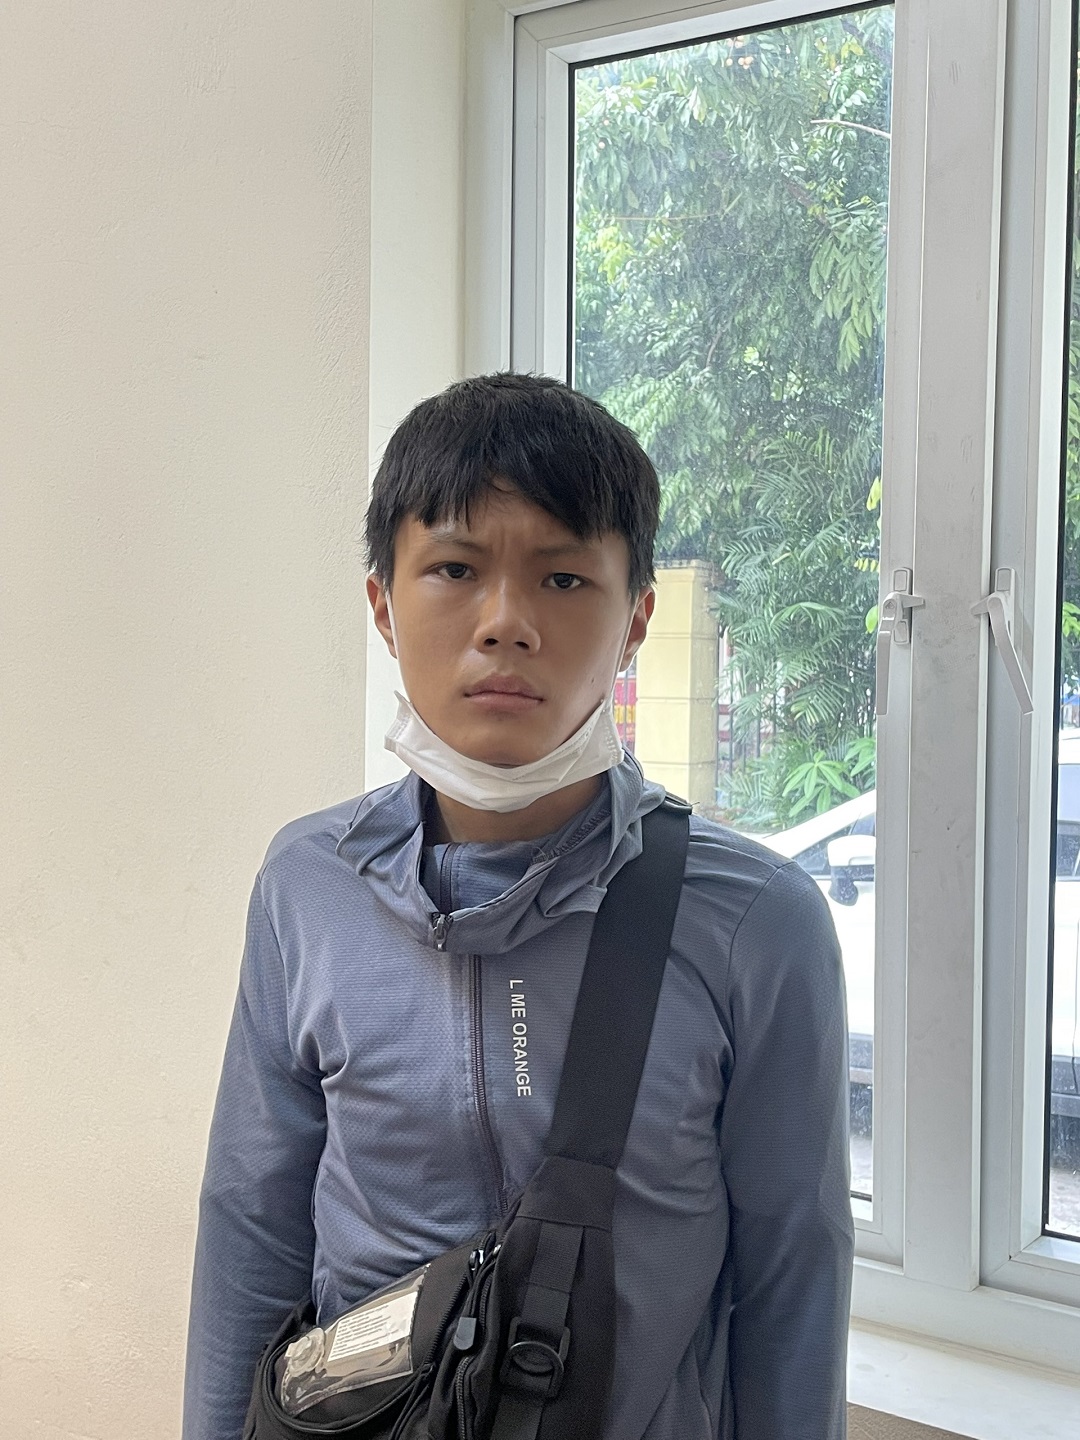 Chi tiết các lỗi thiếu niên ở Phú Thọ chửi bới, lăng mạ cảnh sát ở Hà Nội bị xử lý - Ảnh 4.